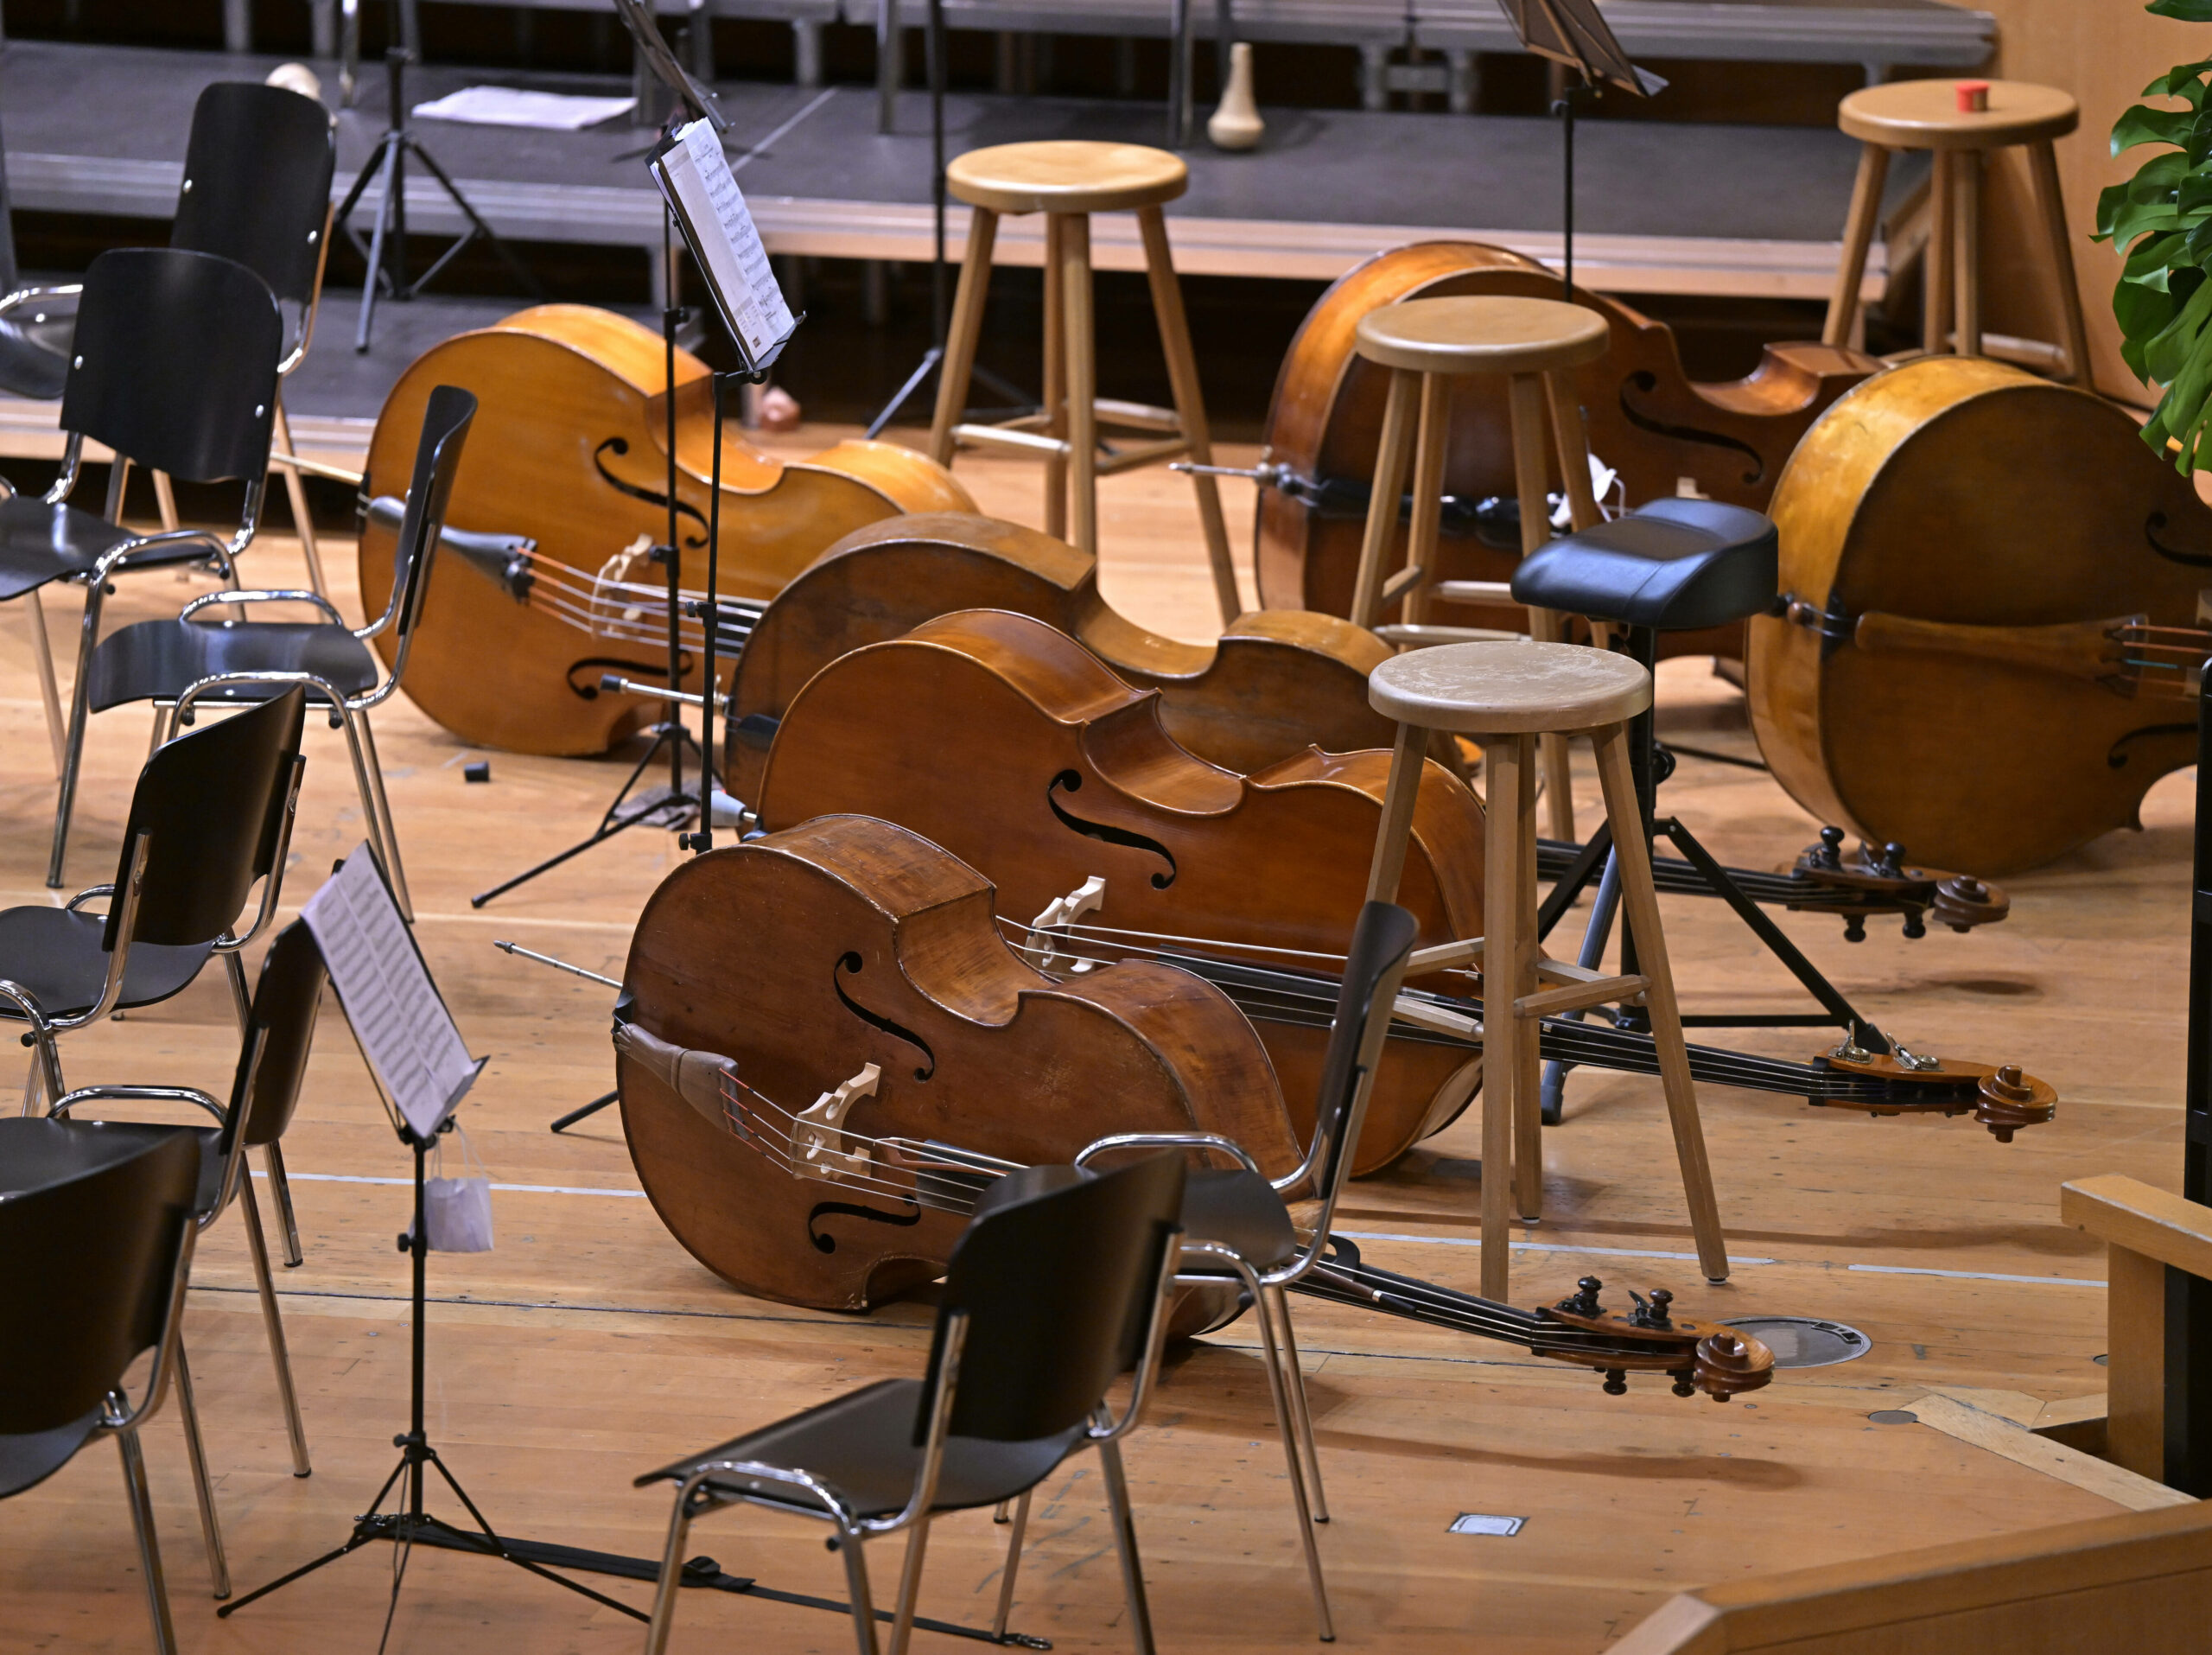 Vor dem Konzert eines Orchesters Konzert liegen die Instrumente am Boden. (Symbolbild)